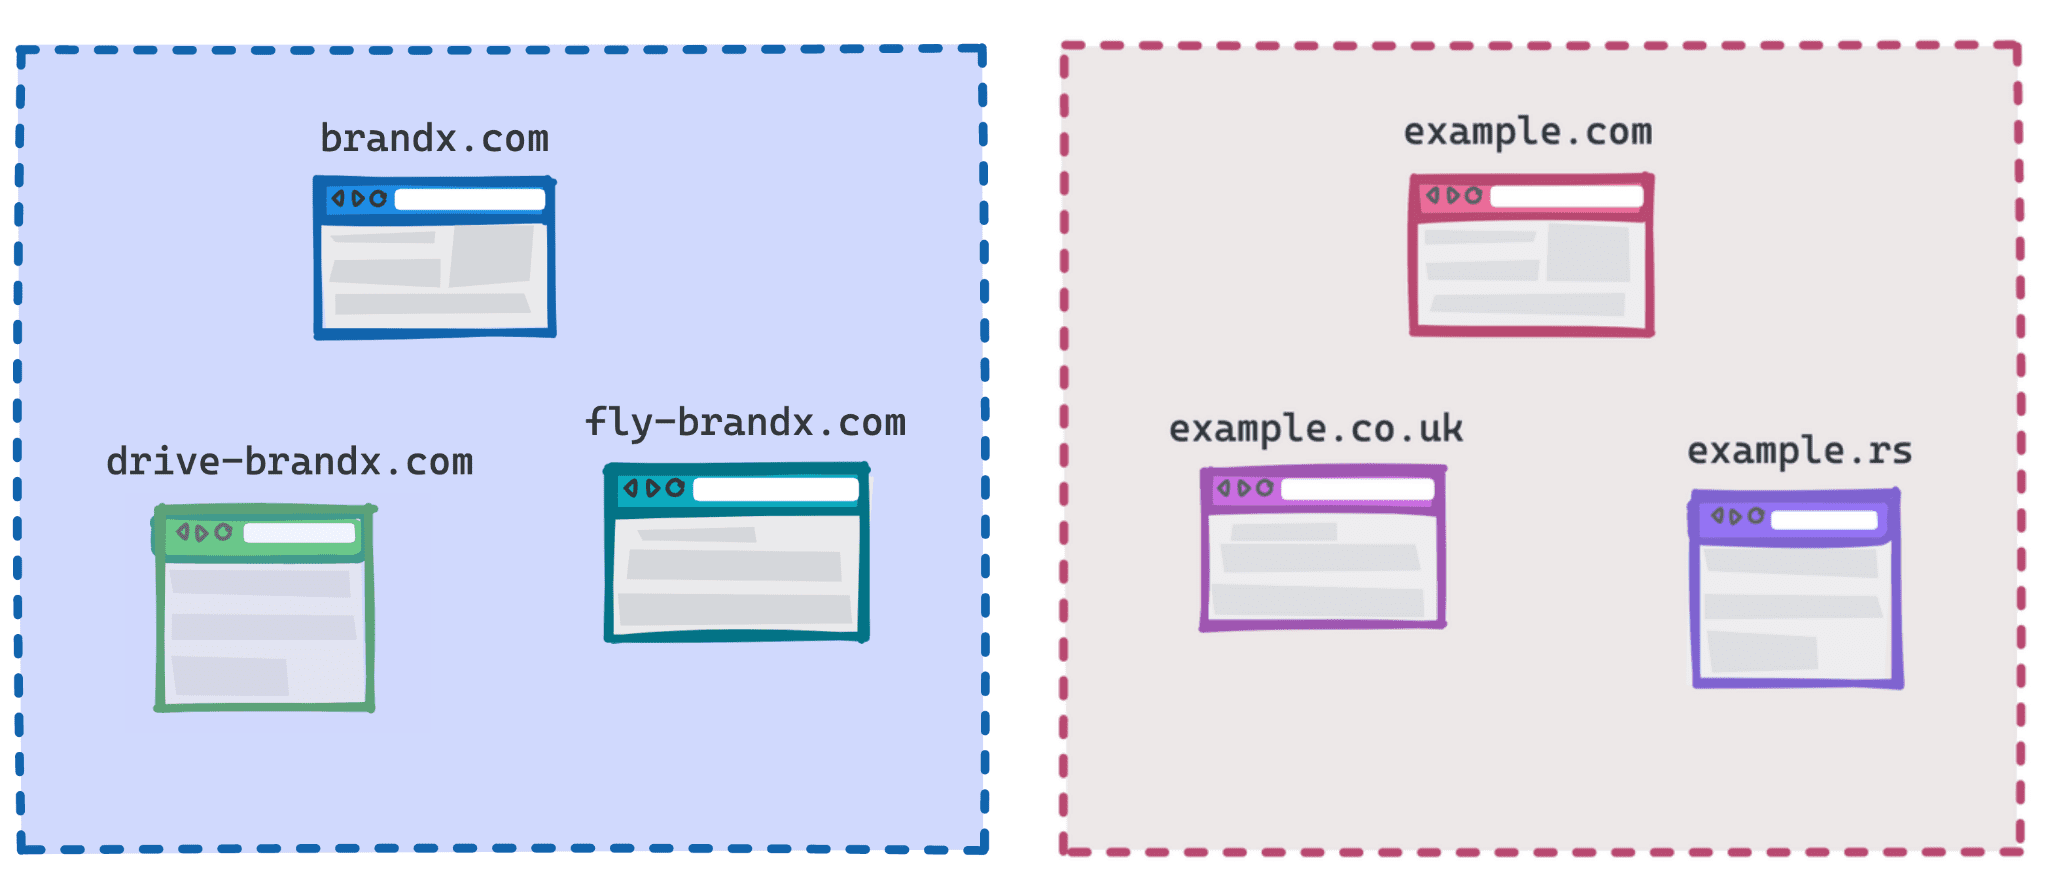 Diagrama en el que se muestran brandx.com, Fly-brandx.com y drive-brandx.com como un grupo, y example.com, example.rs y example.co.uk como otro.